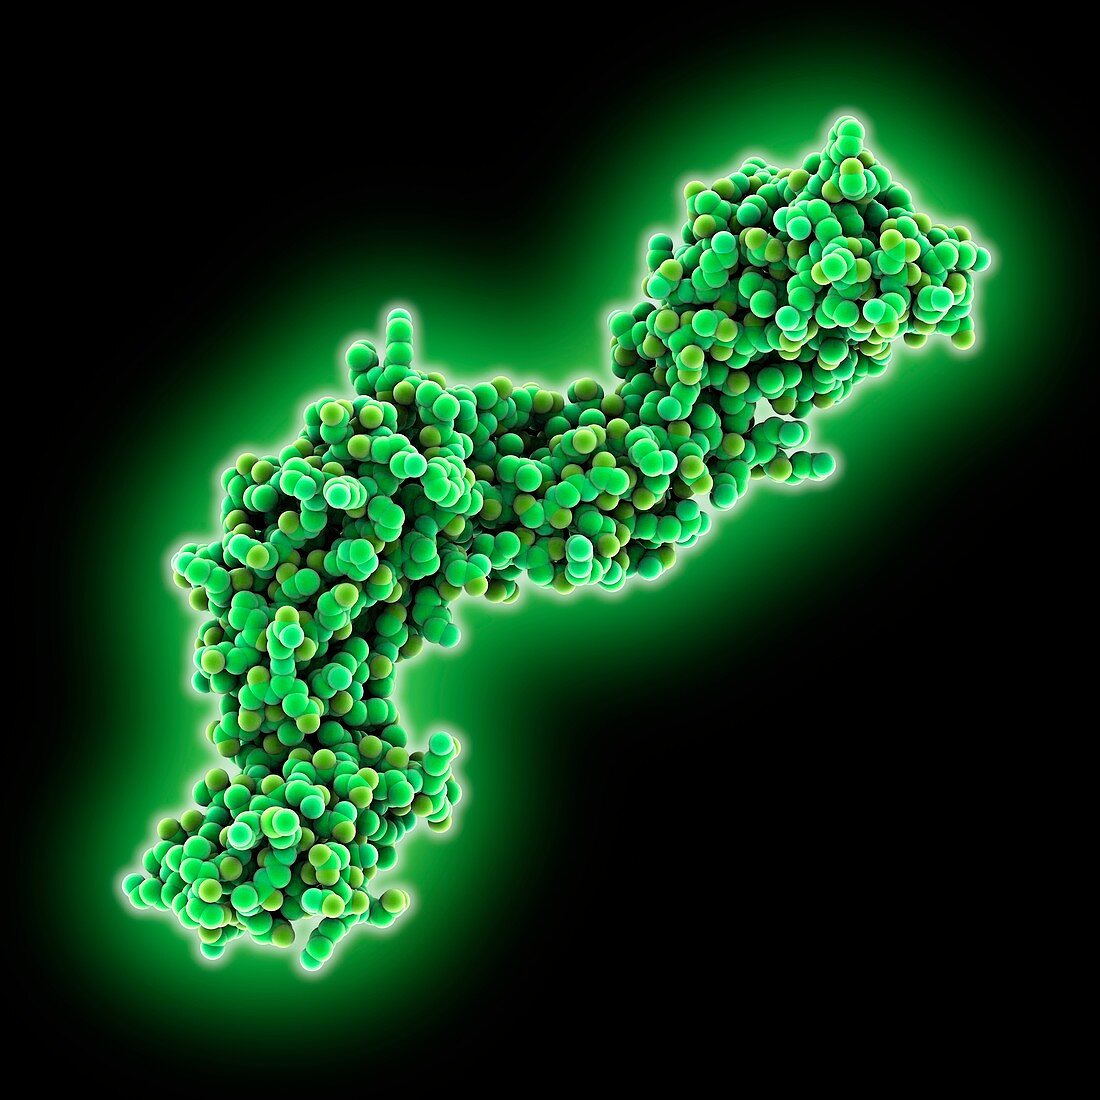 CD4 protein molecule